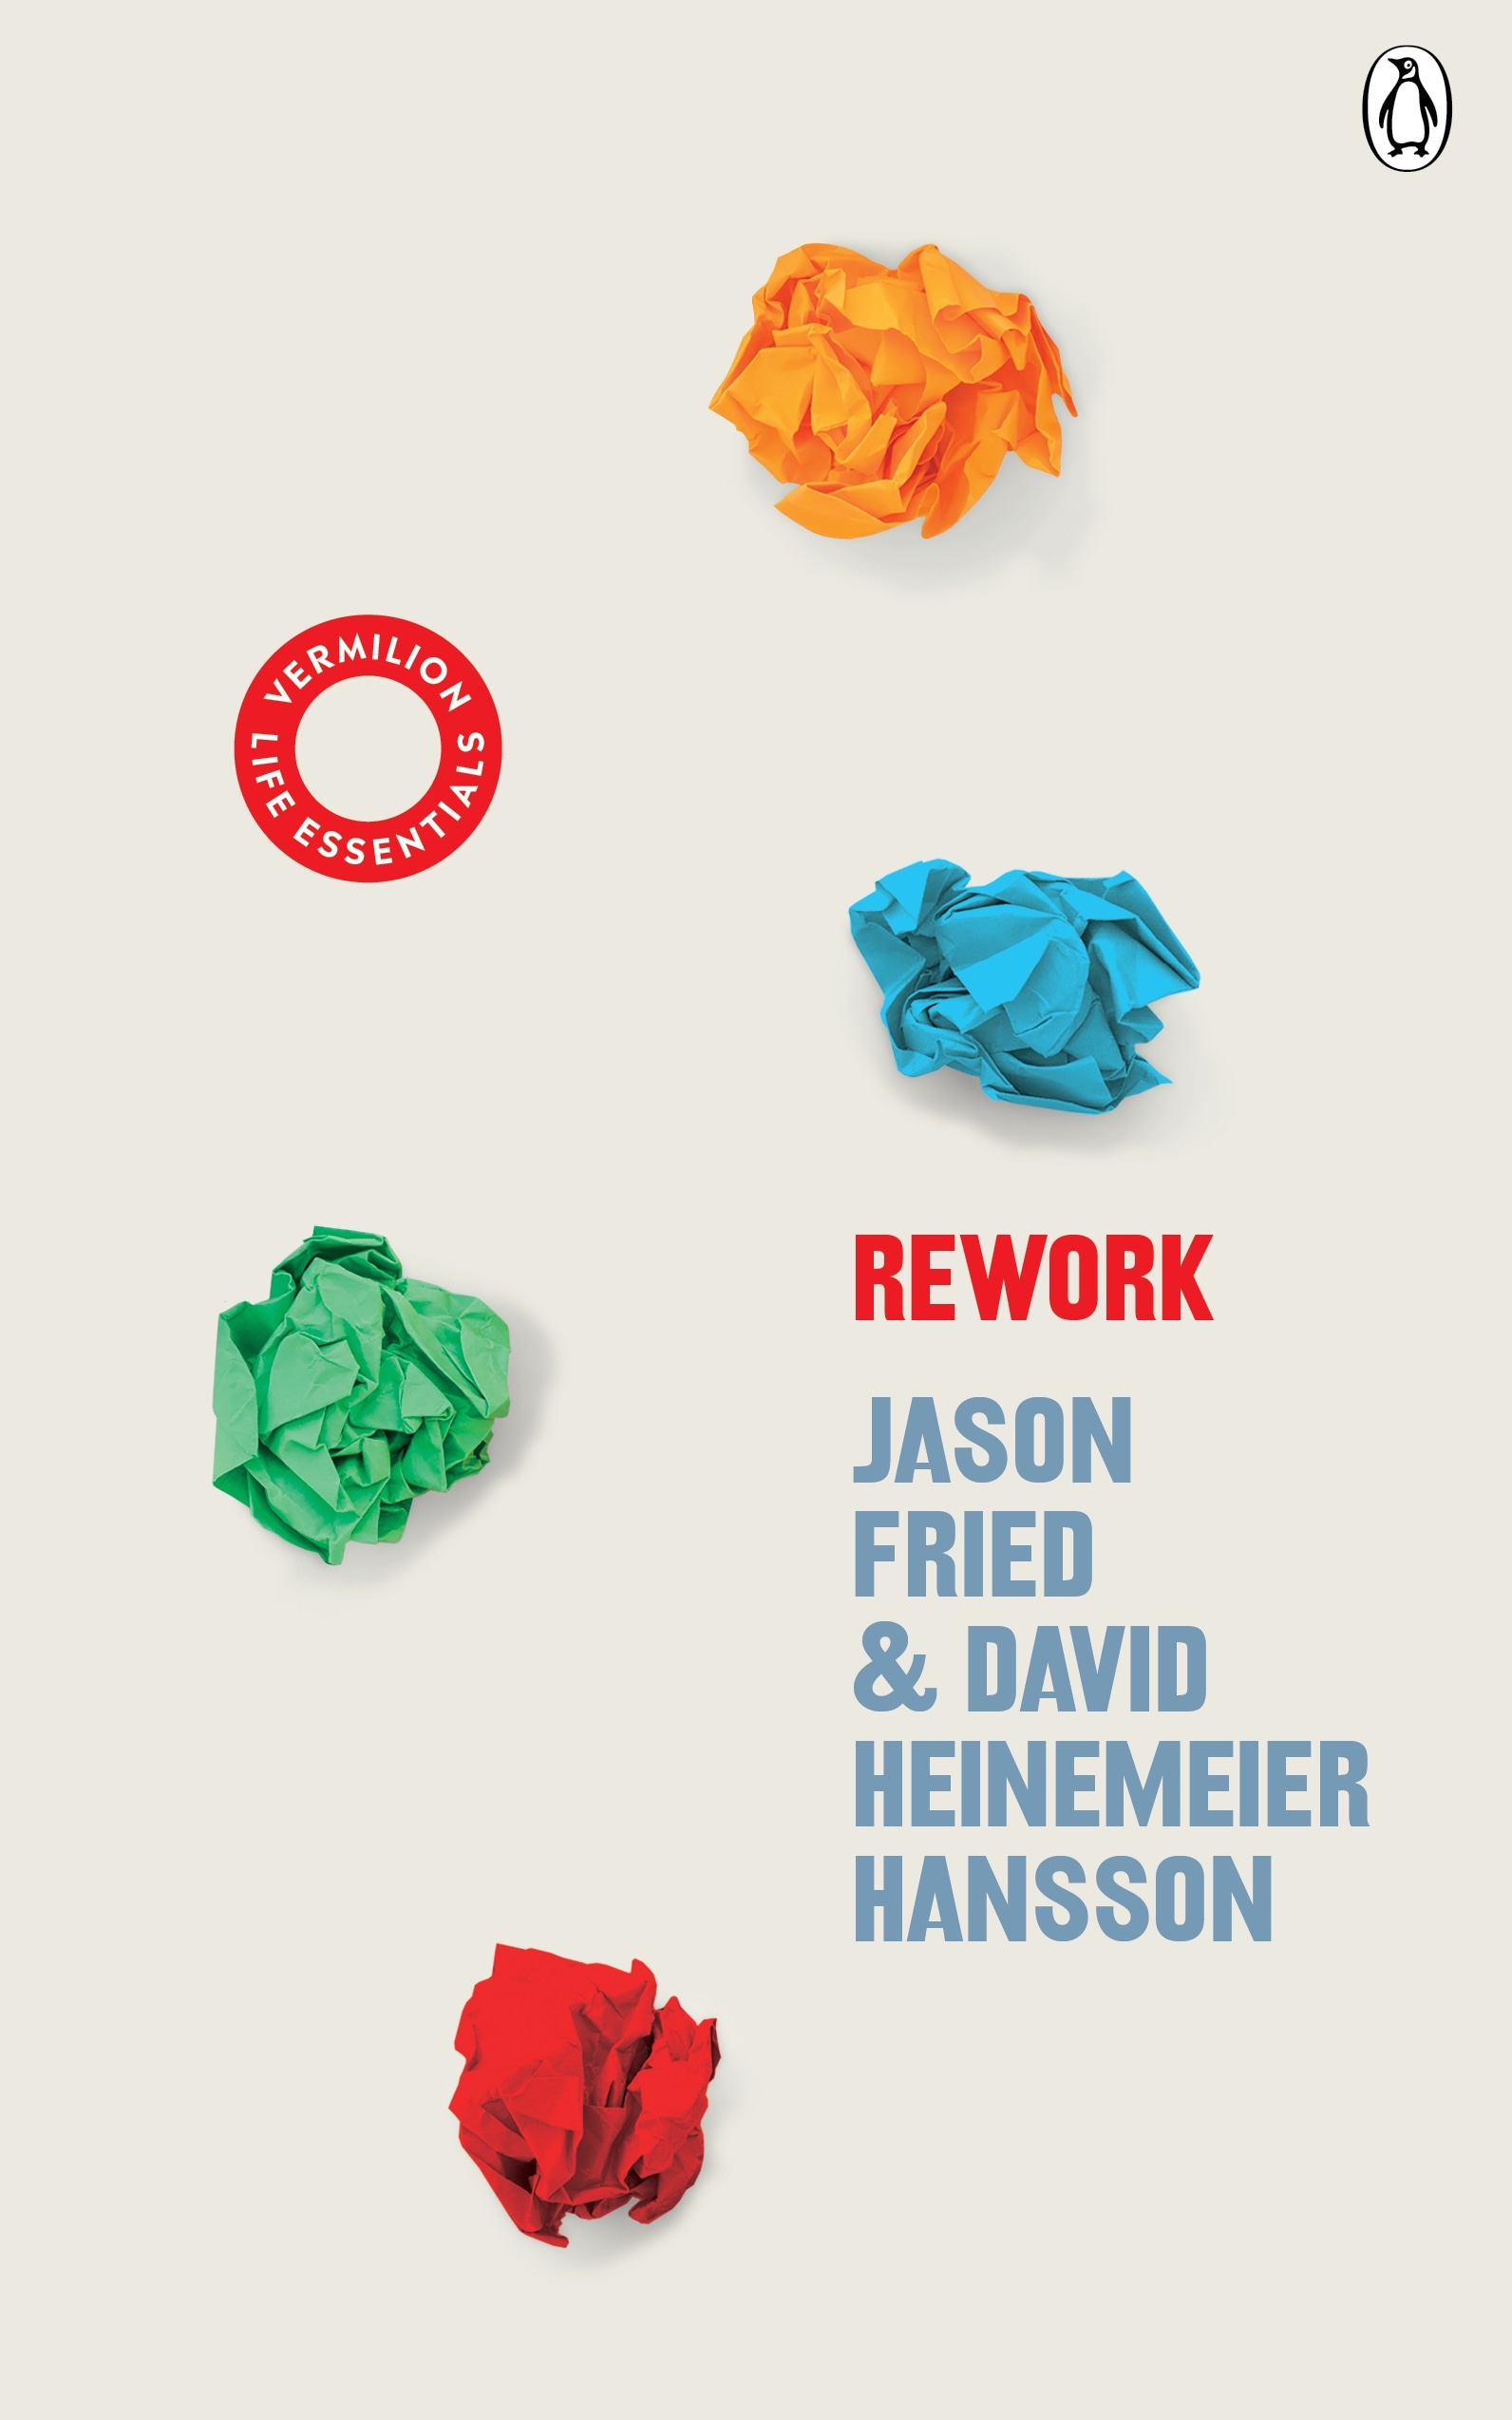 Book “ReWork” by David Heinemeier Hansson, Jason Fried — August 20, 2020